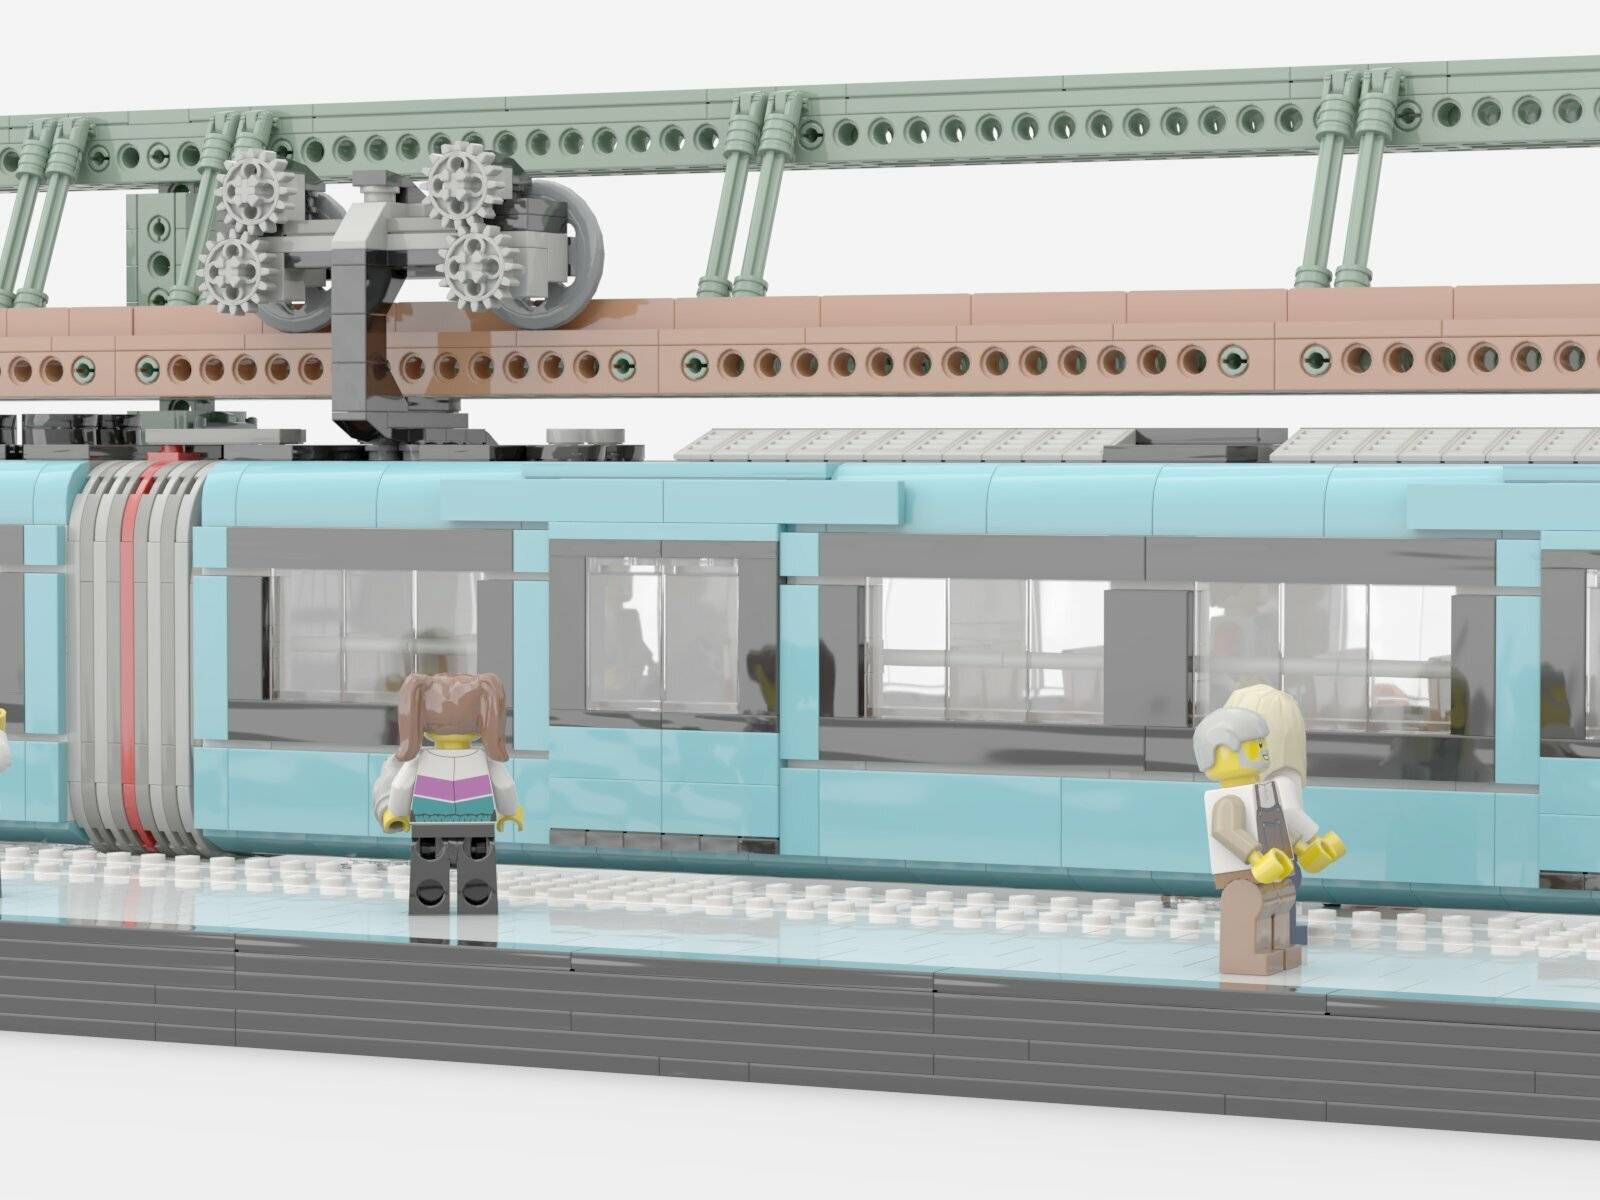 Eine Lego-Schwebebahn für Wuppertal